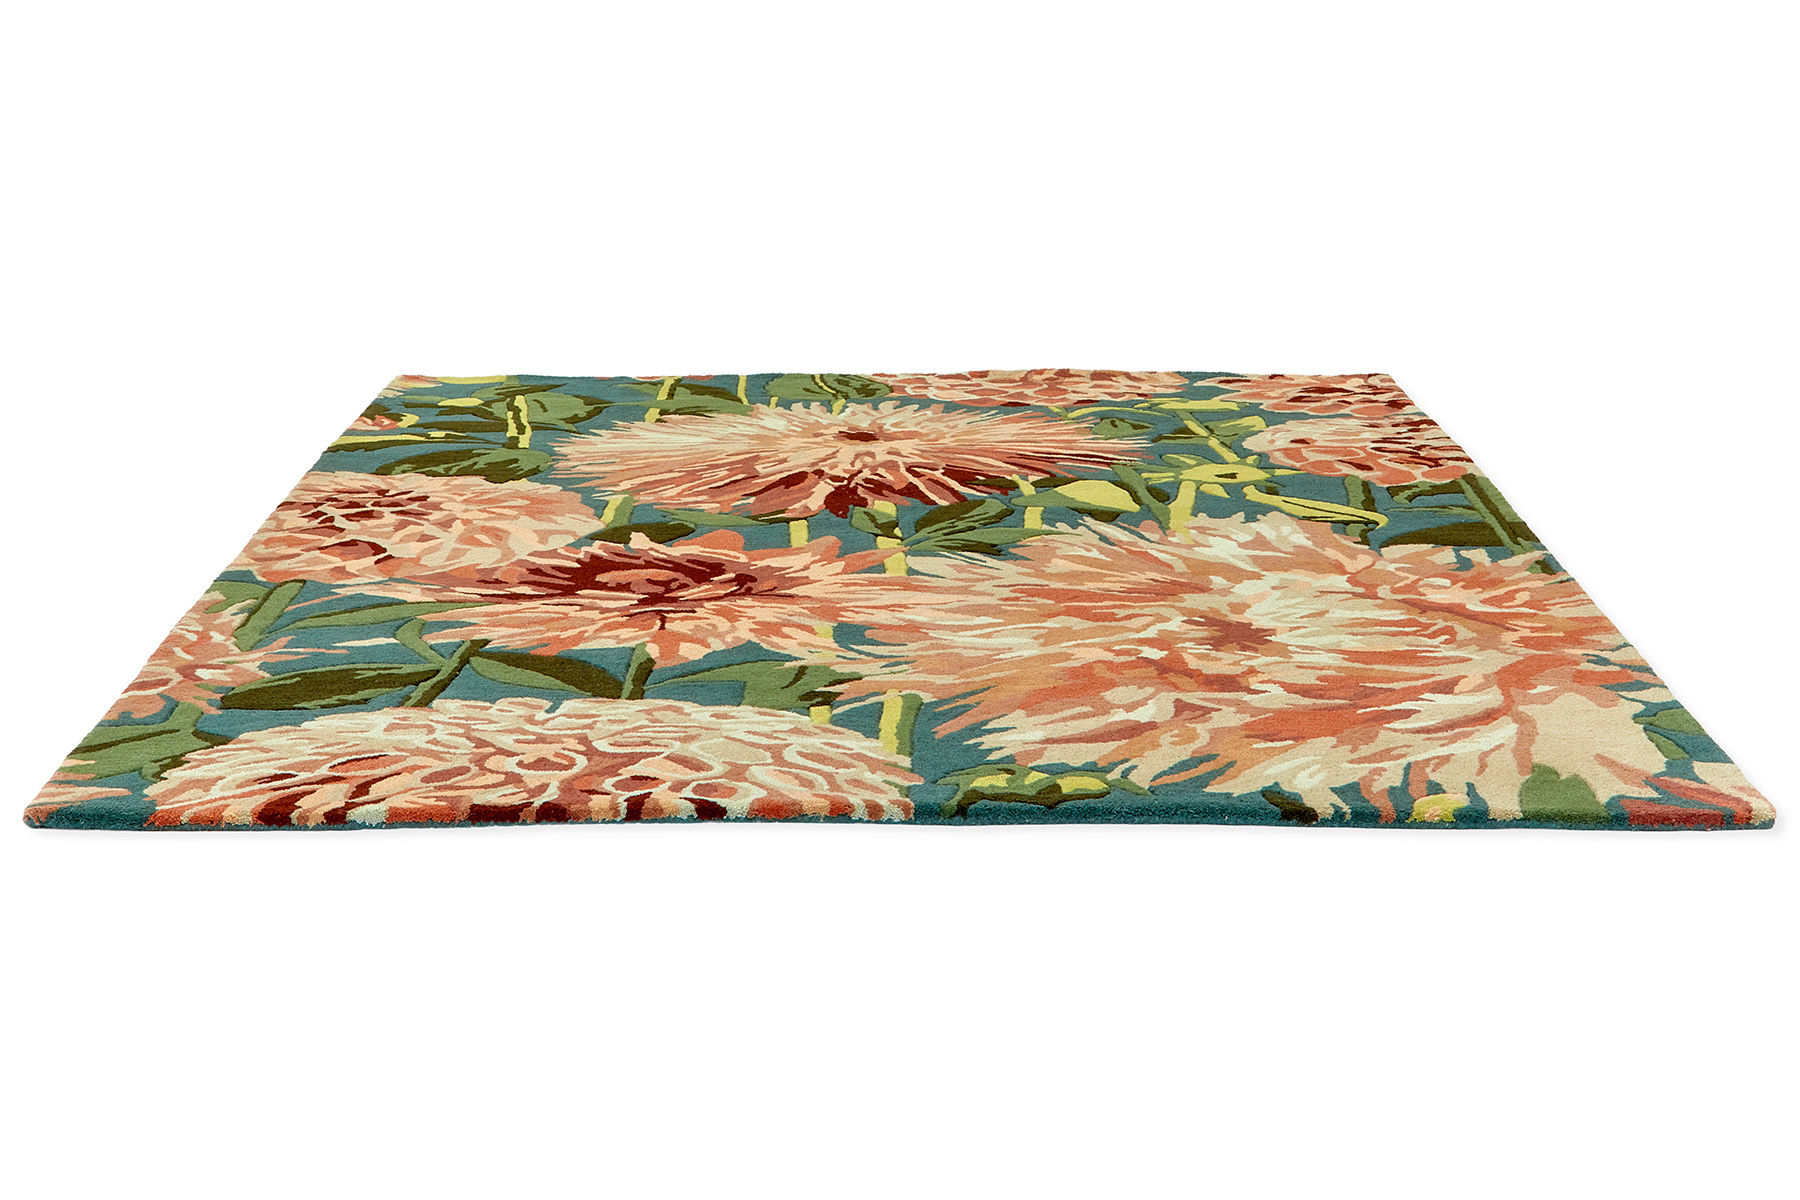 Dahlia Coral / Wilderness Designer Rug ☞ Size: 4' 7" x 6' 7" (140 x 200 cm)